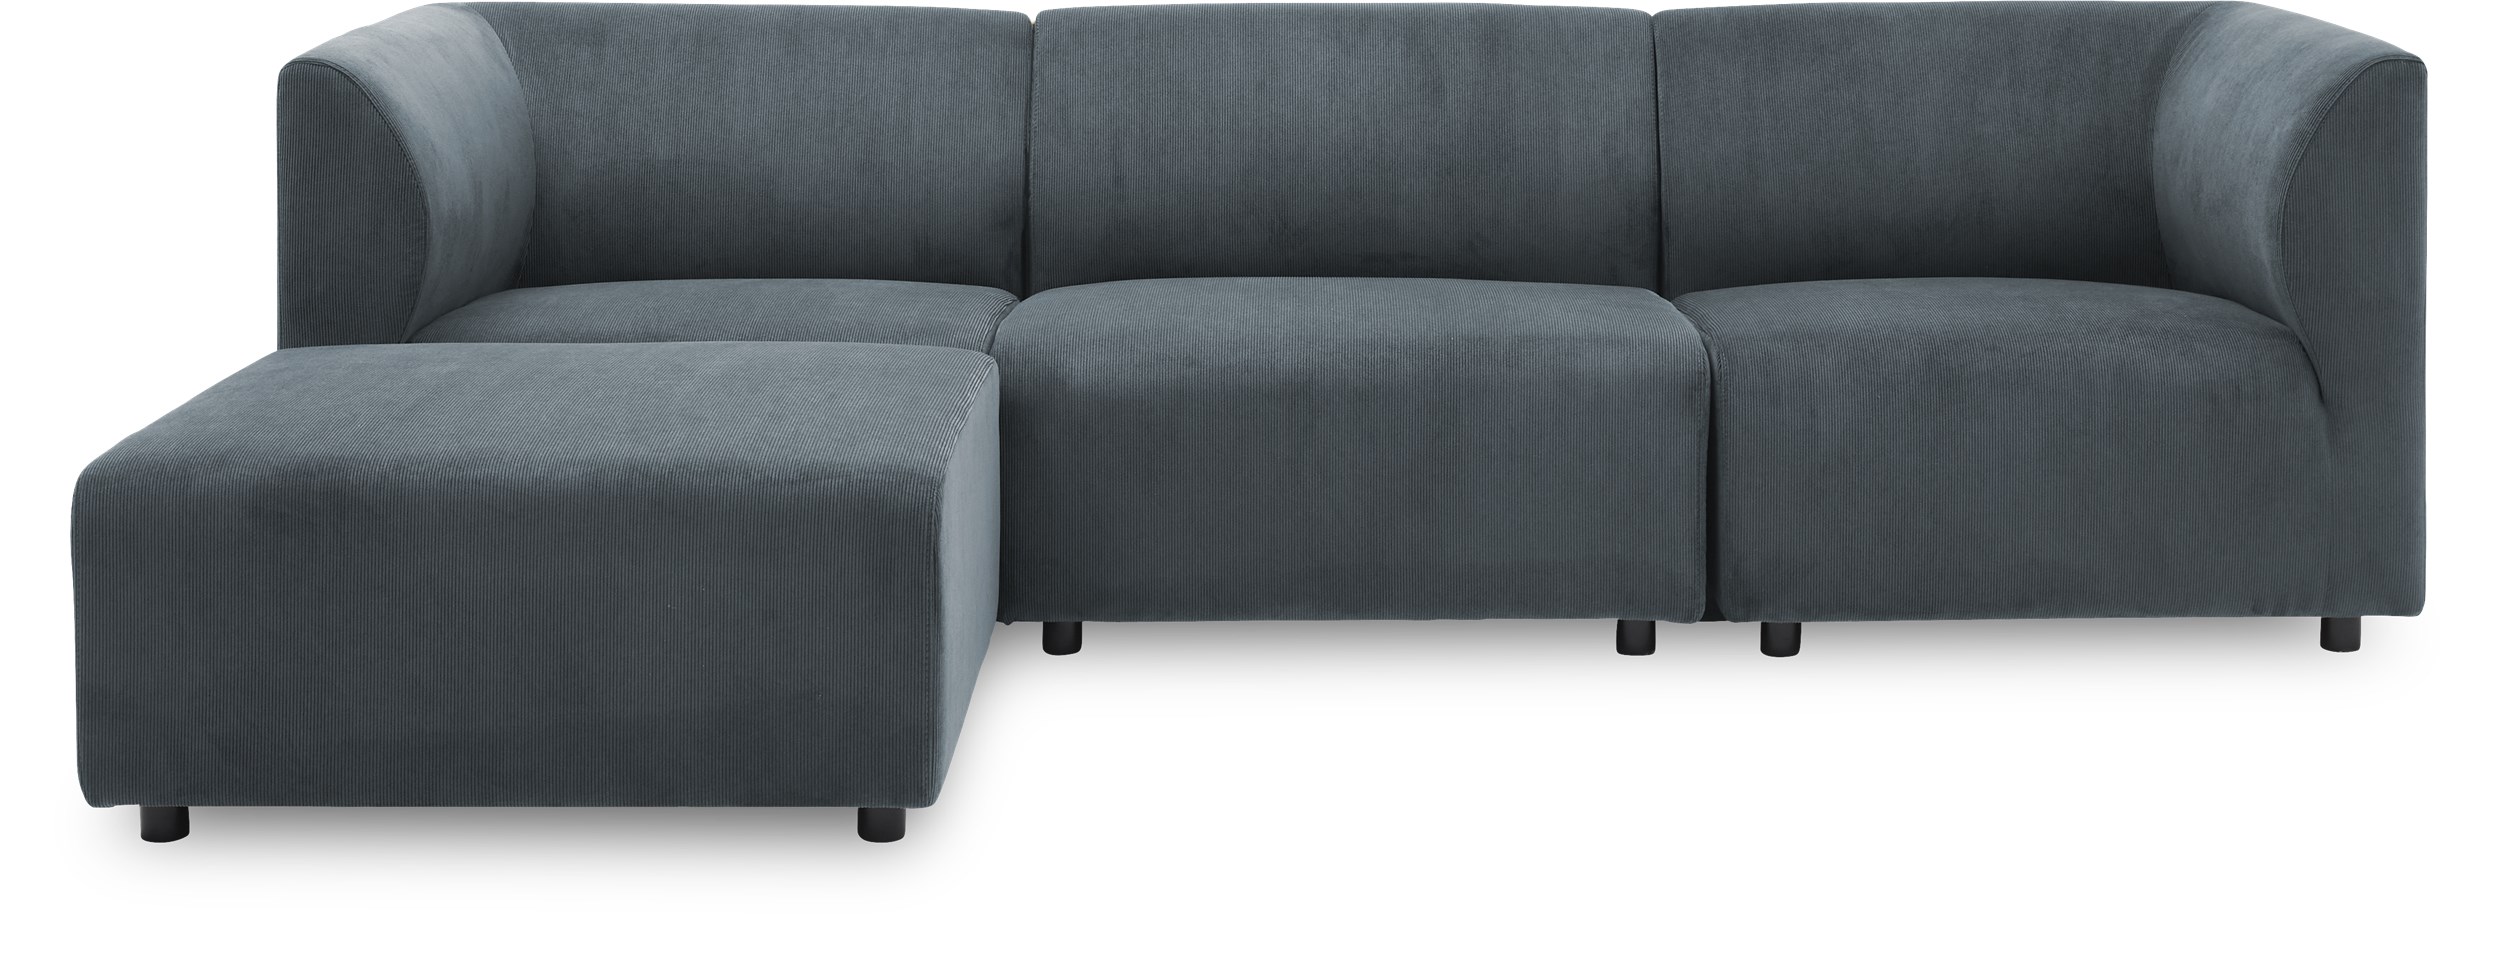 Divani 3 pers Sofa - Wave 40 Slate grey stof og ben i sort plast